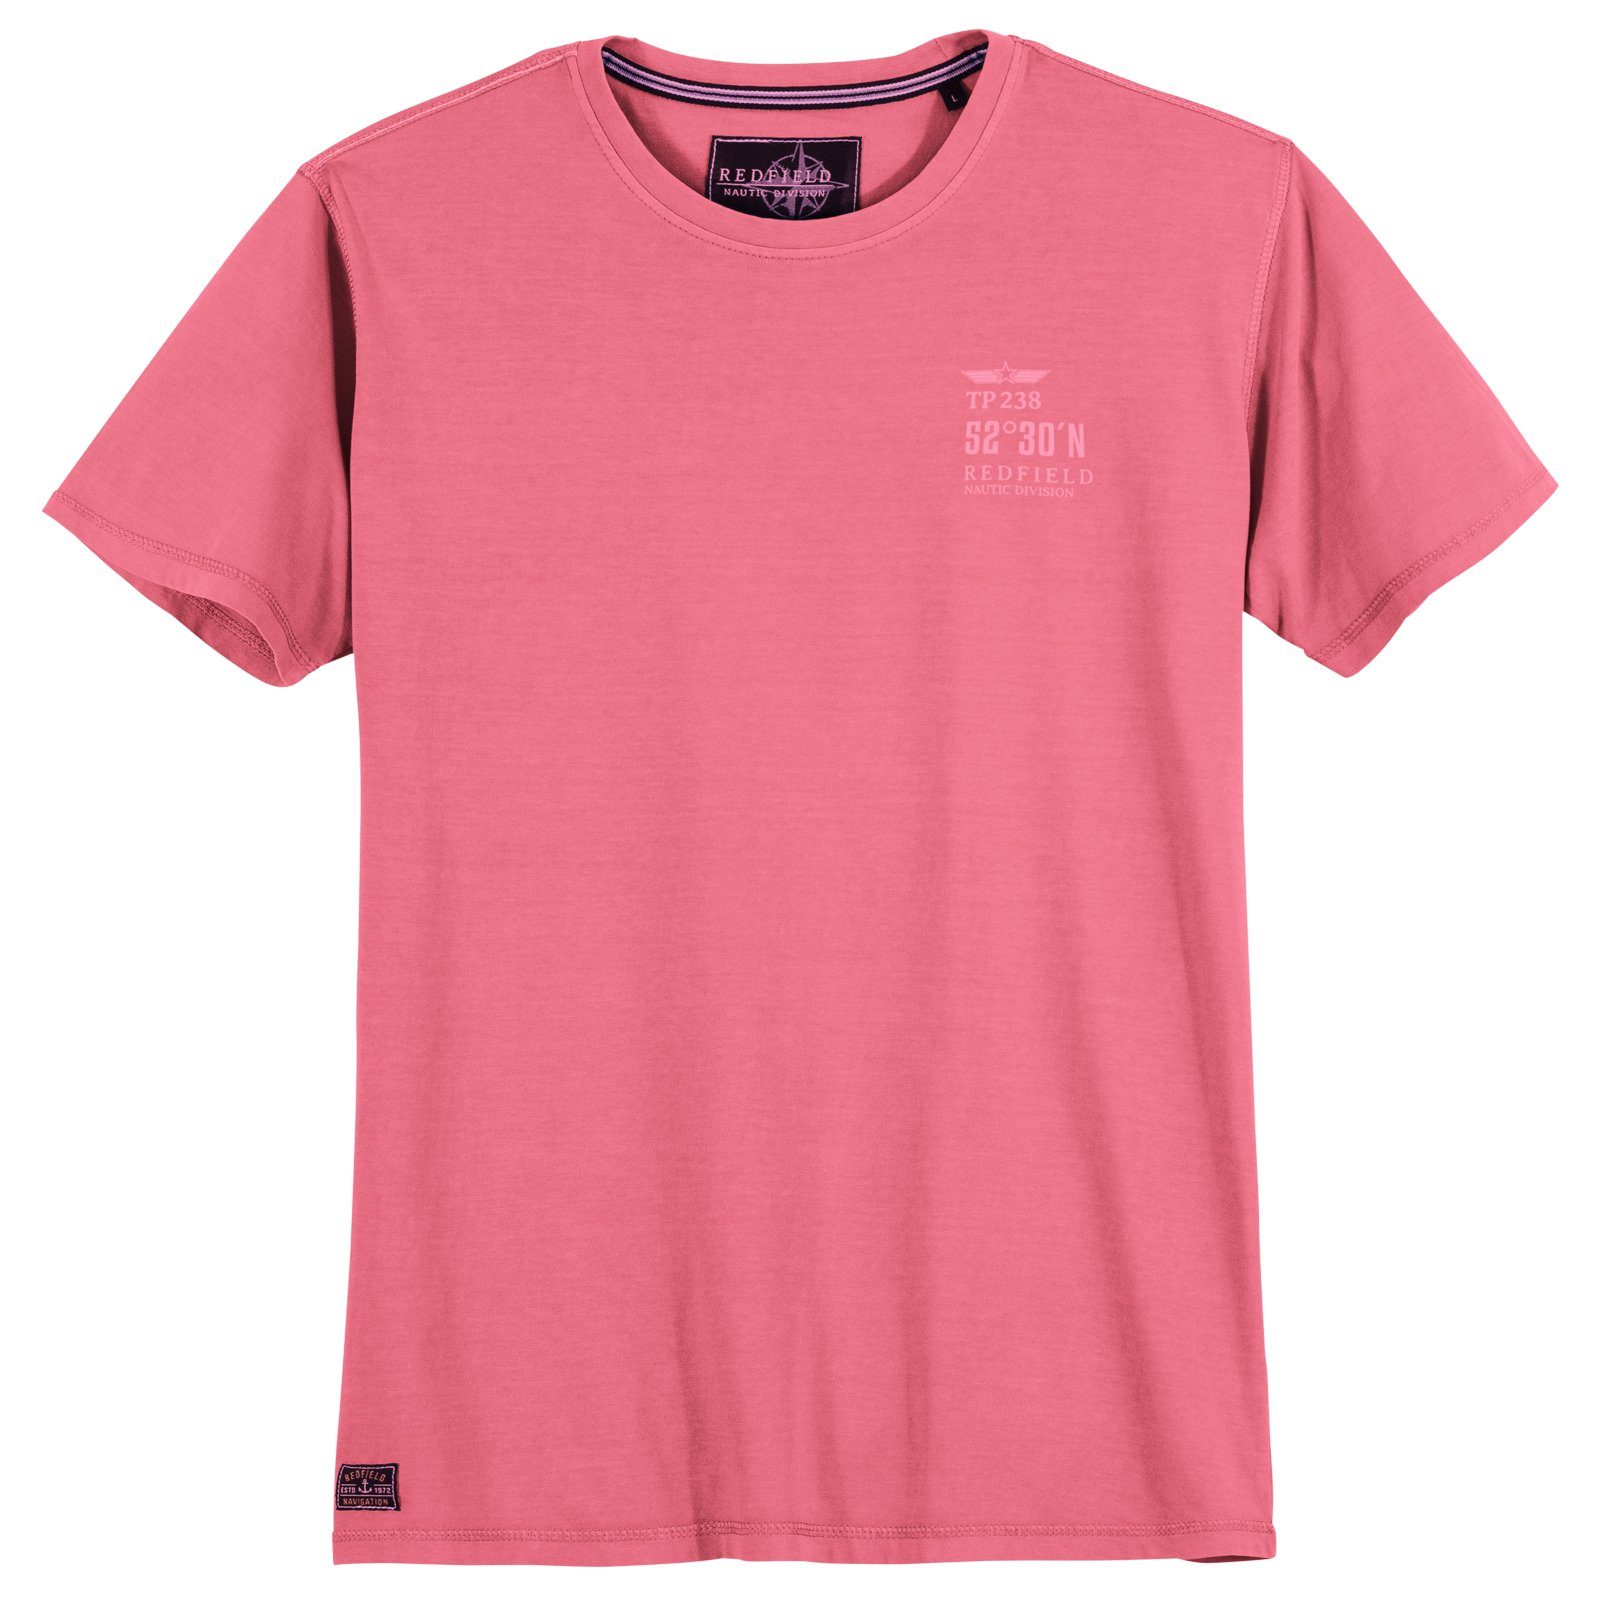 redfield Print-Shirt Große Größen Herren Vintage T-Shirt pink Redfield